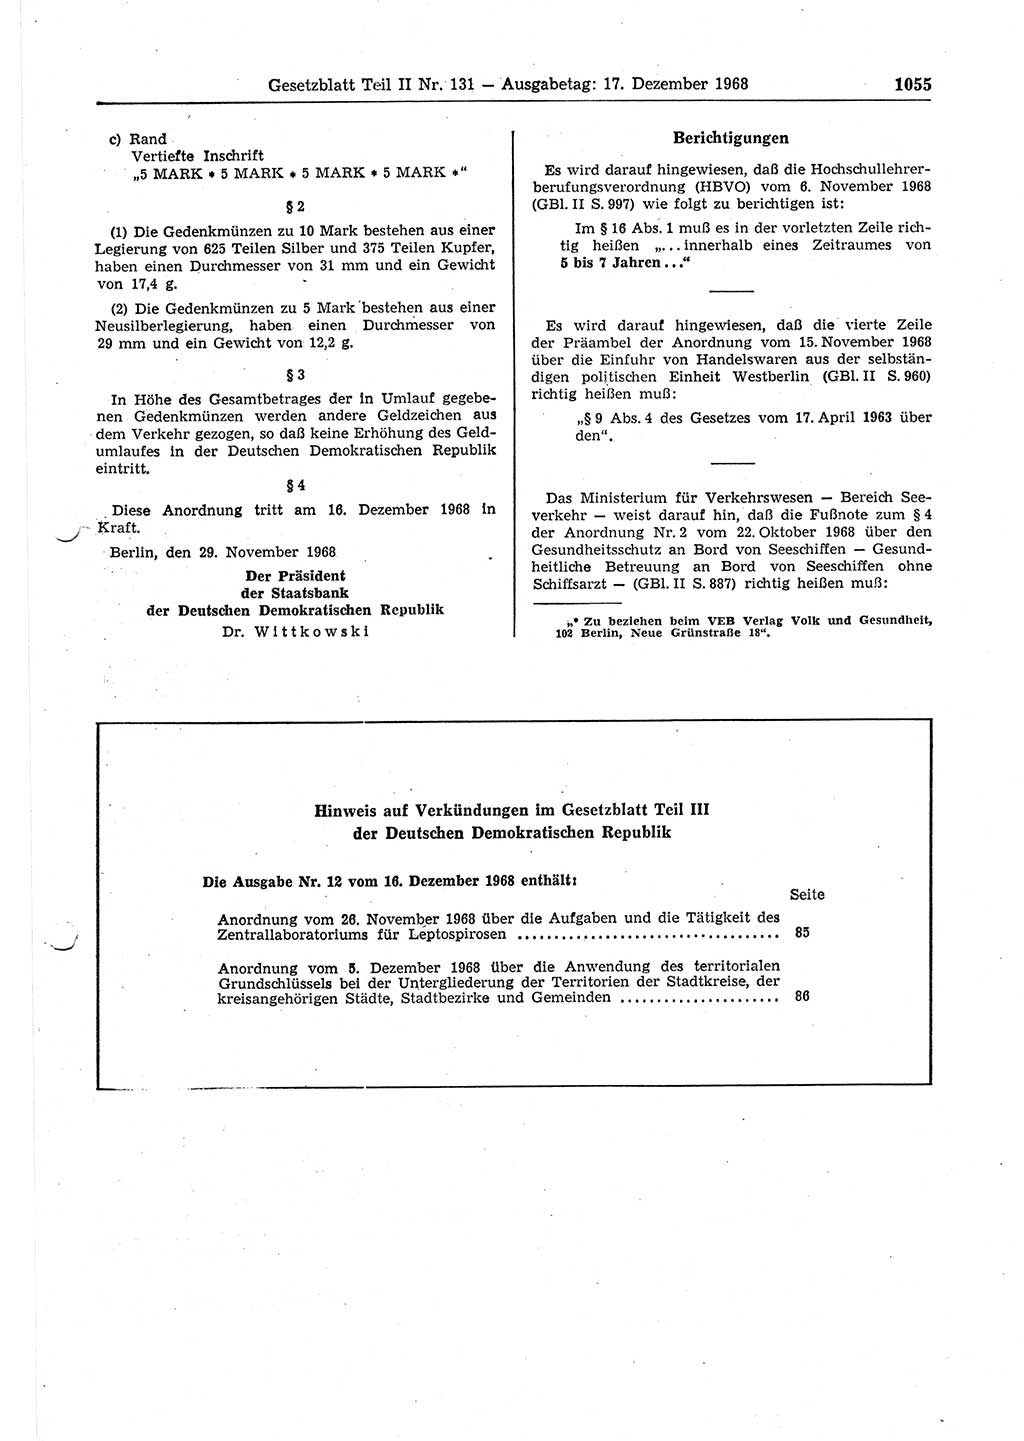 Gesetzblatt (GBl.) der Deutschen Demokratischen Republik (DDR) Teil ⅠⅠ 1968, Seite 1055 (GBl. DDR ⅠⅠ 1968, S. 1055)